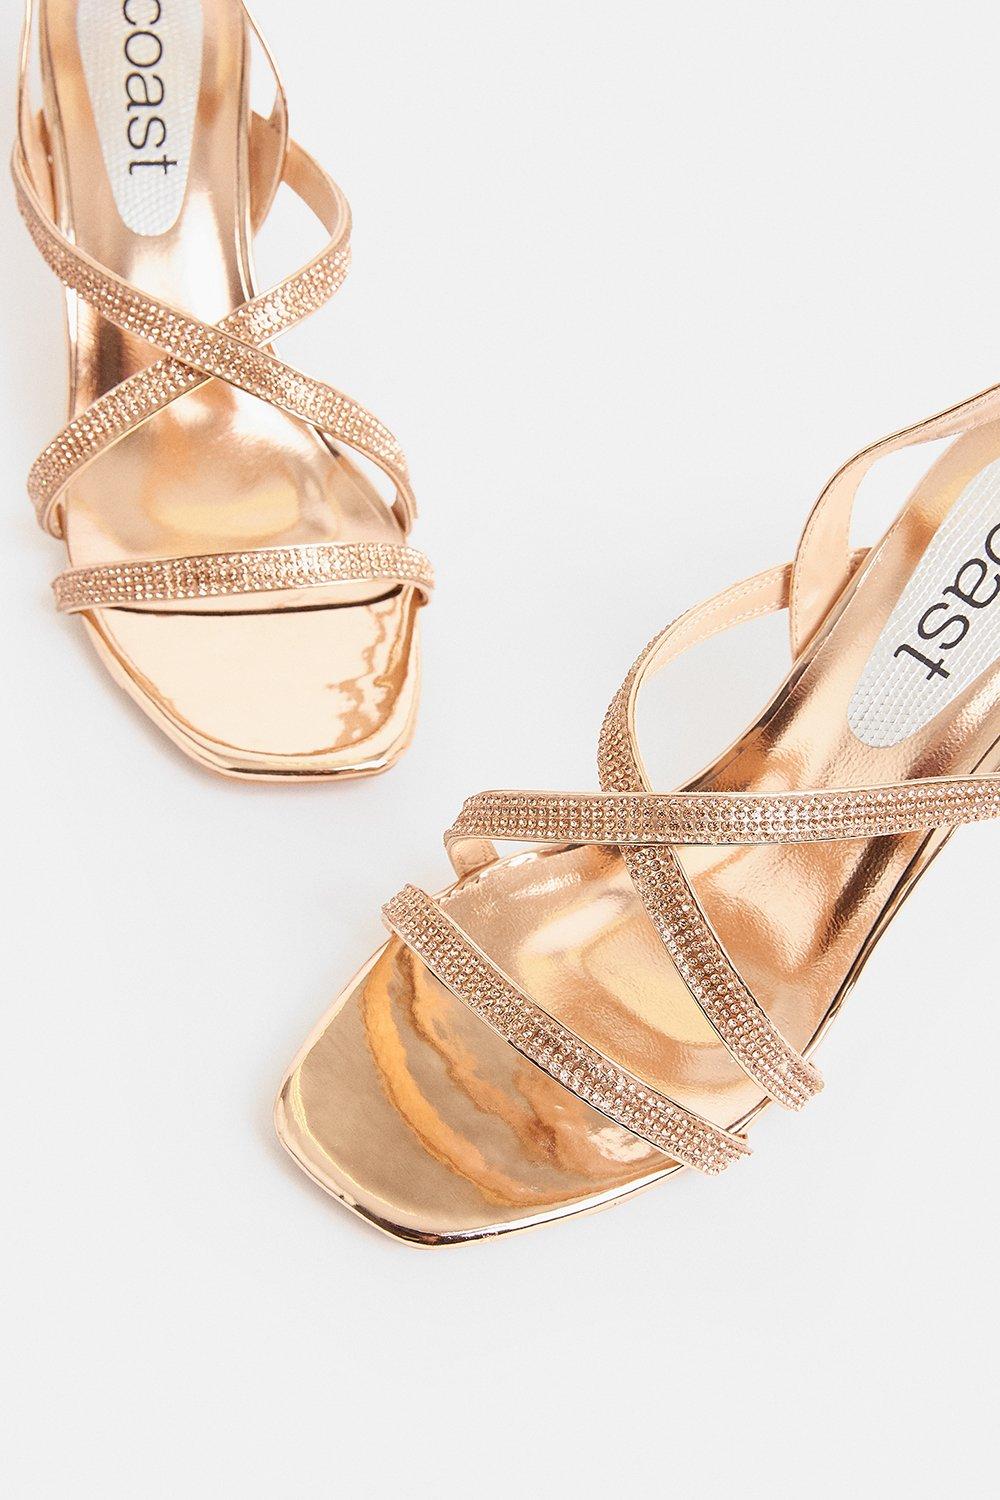 rose gold diamante sandals